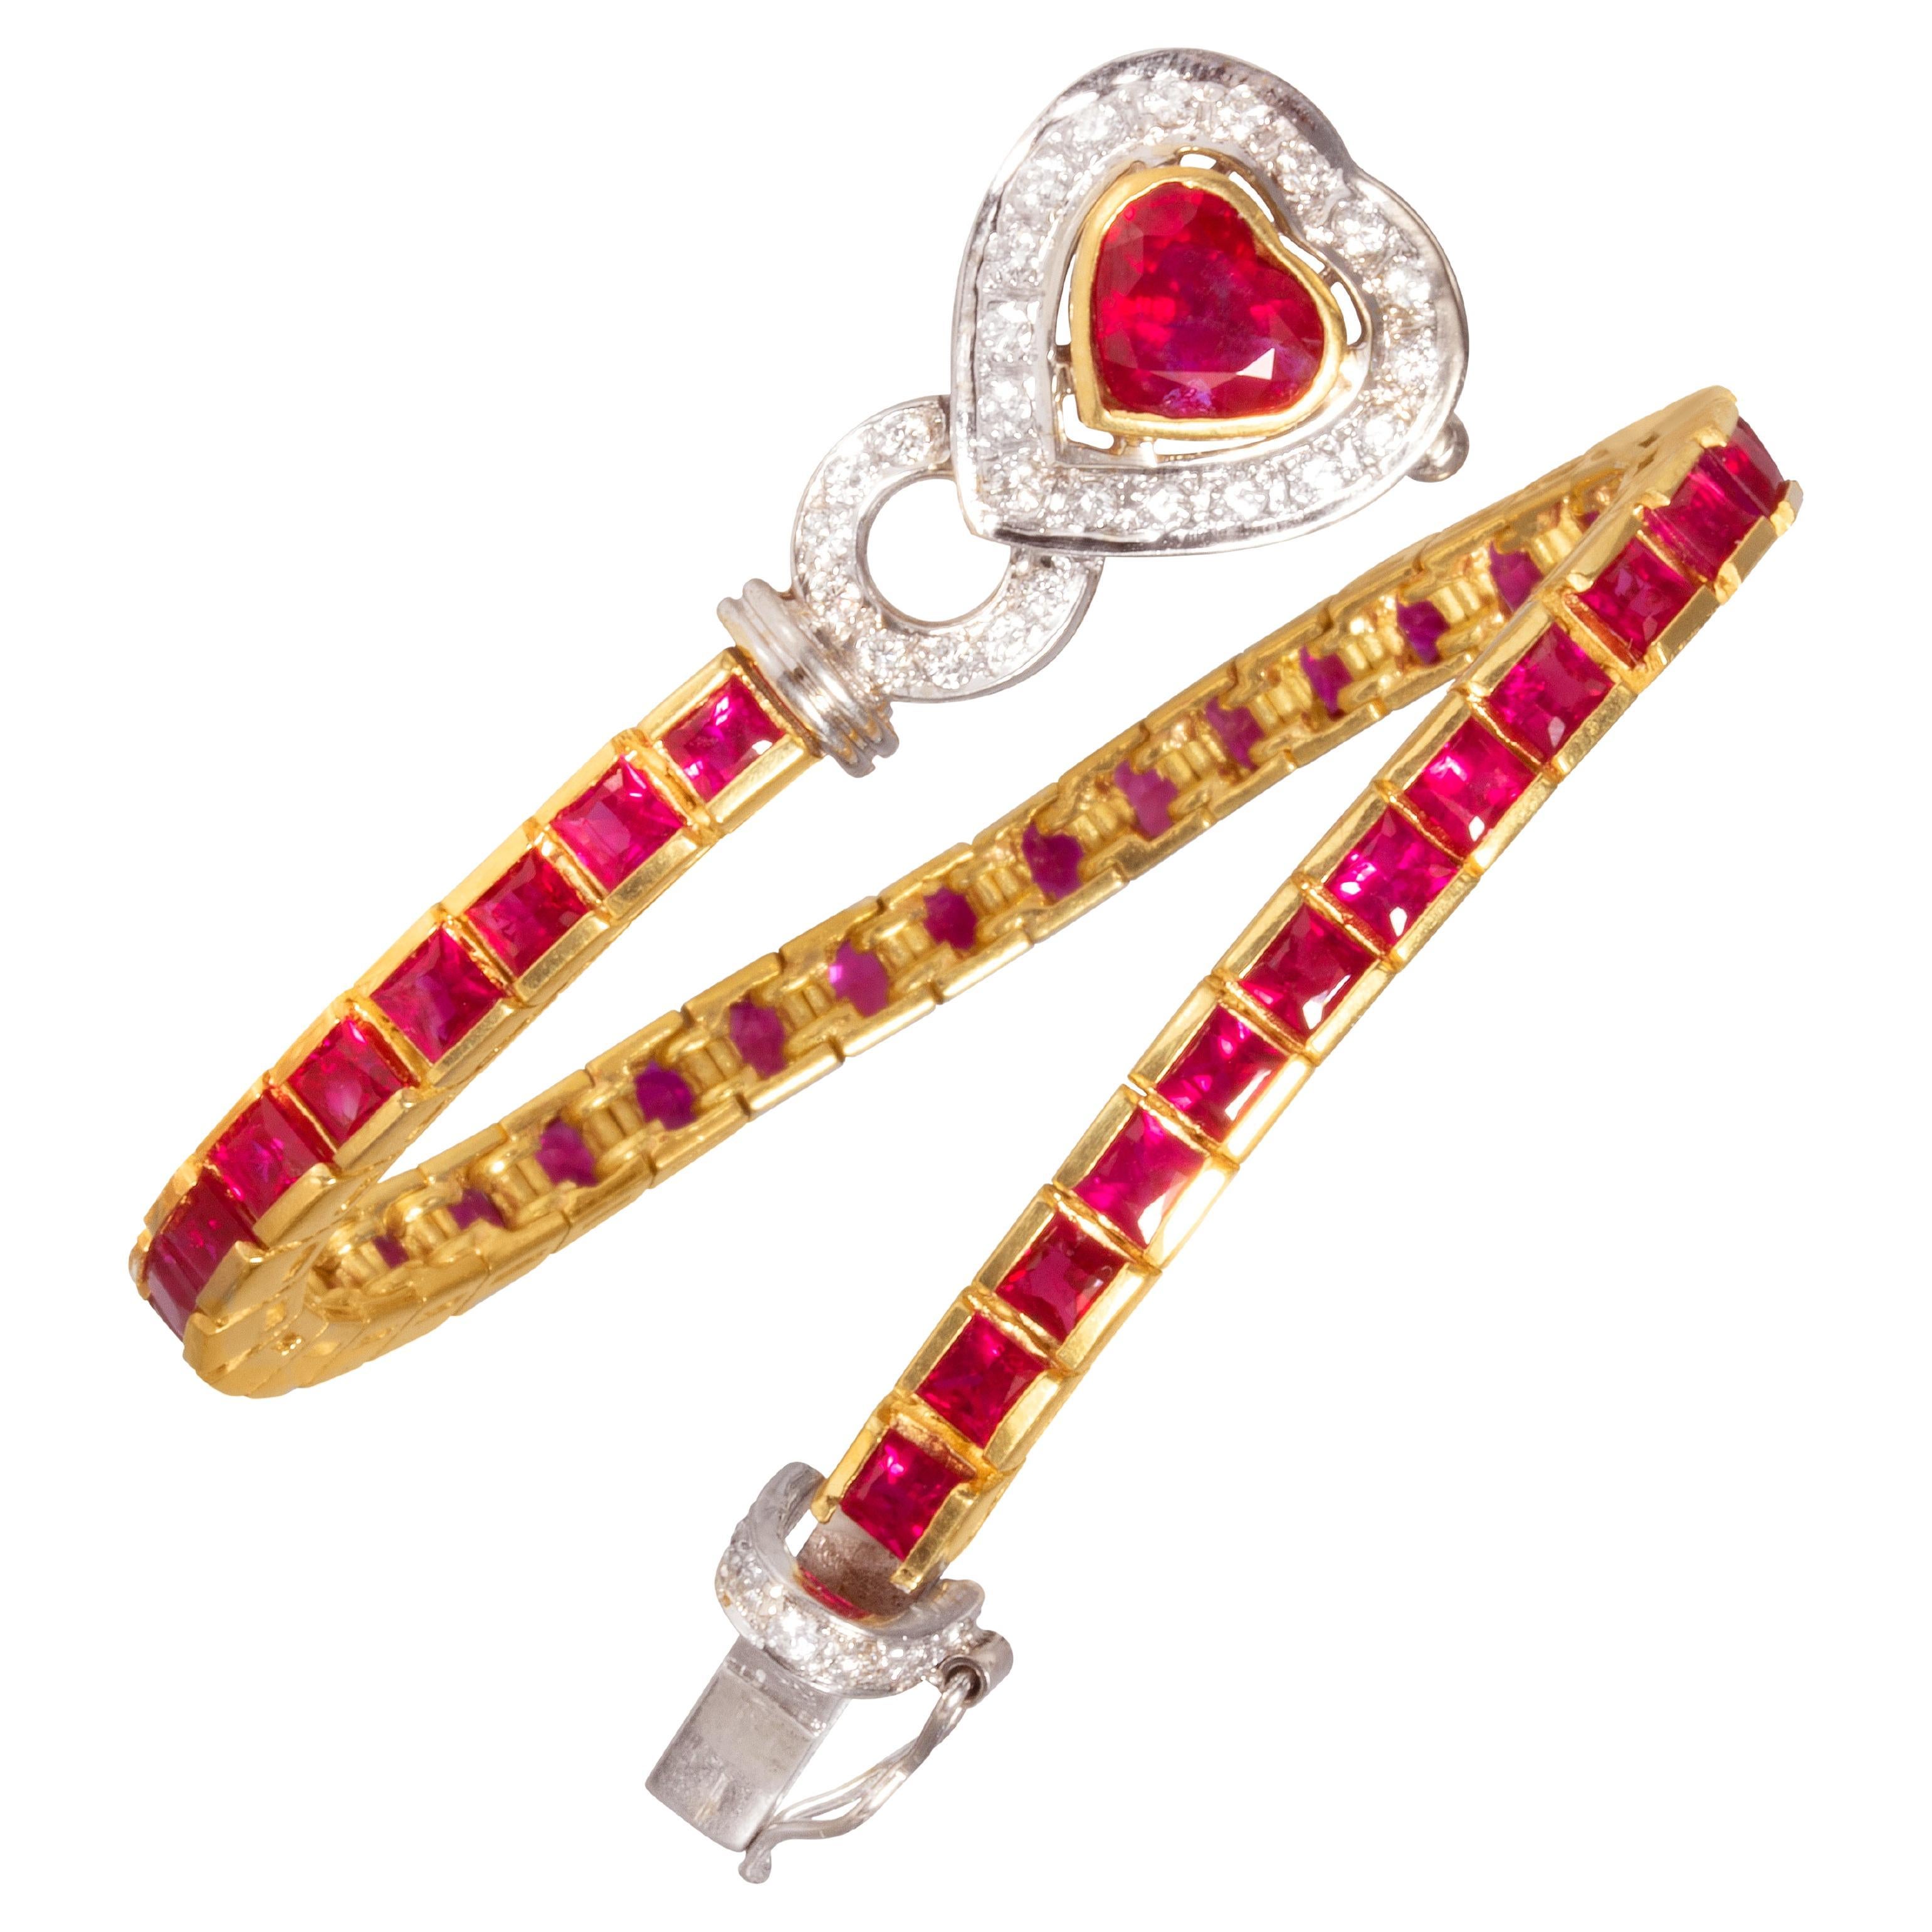 Ella Gafter Herzförmiges Rubin-Diamant-Armband in Farbe Linie